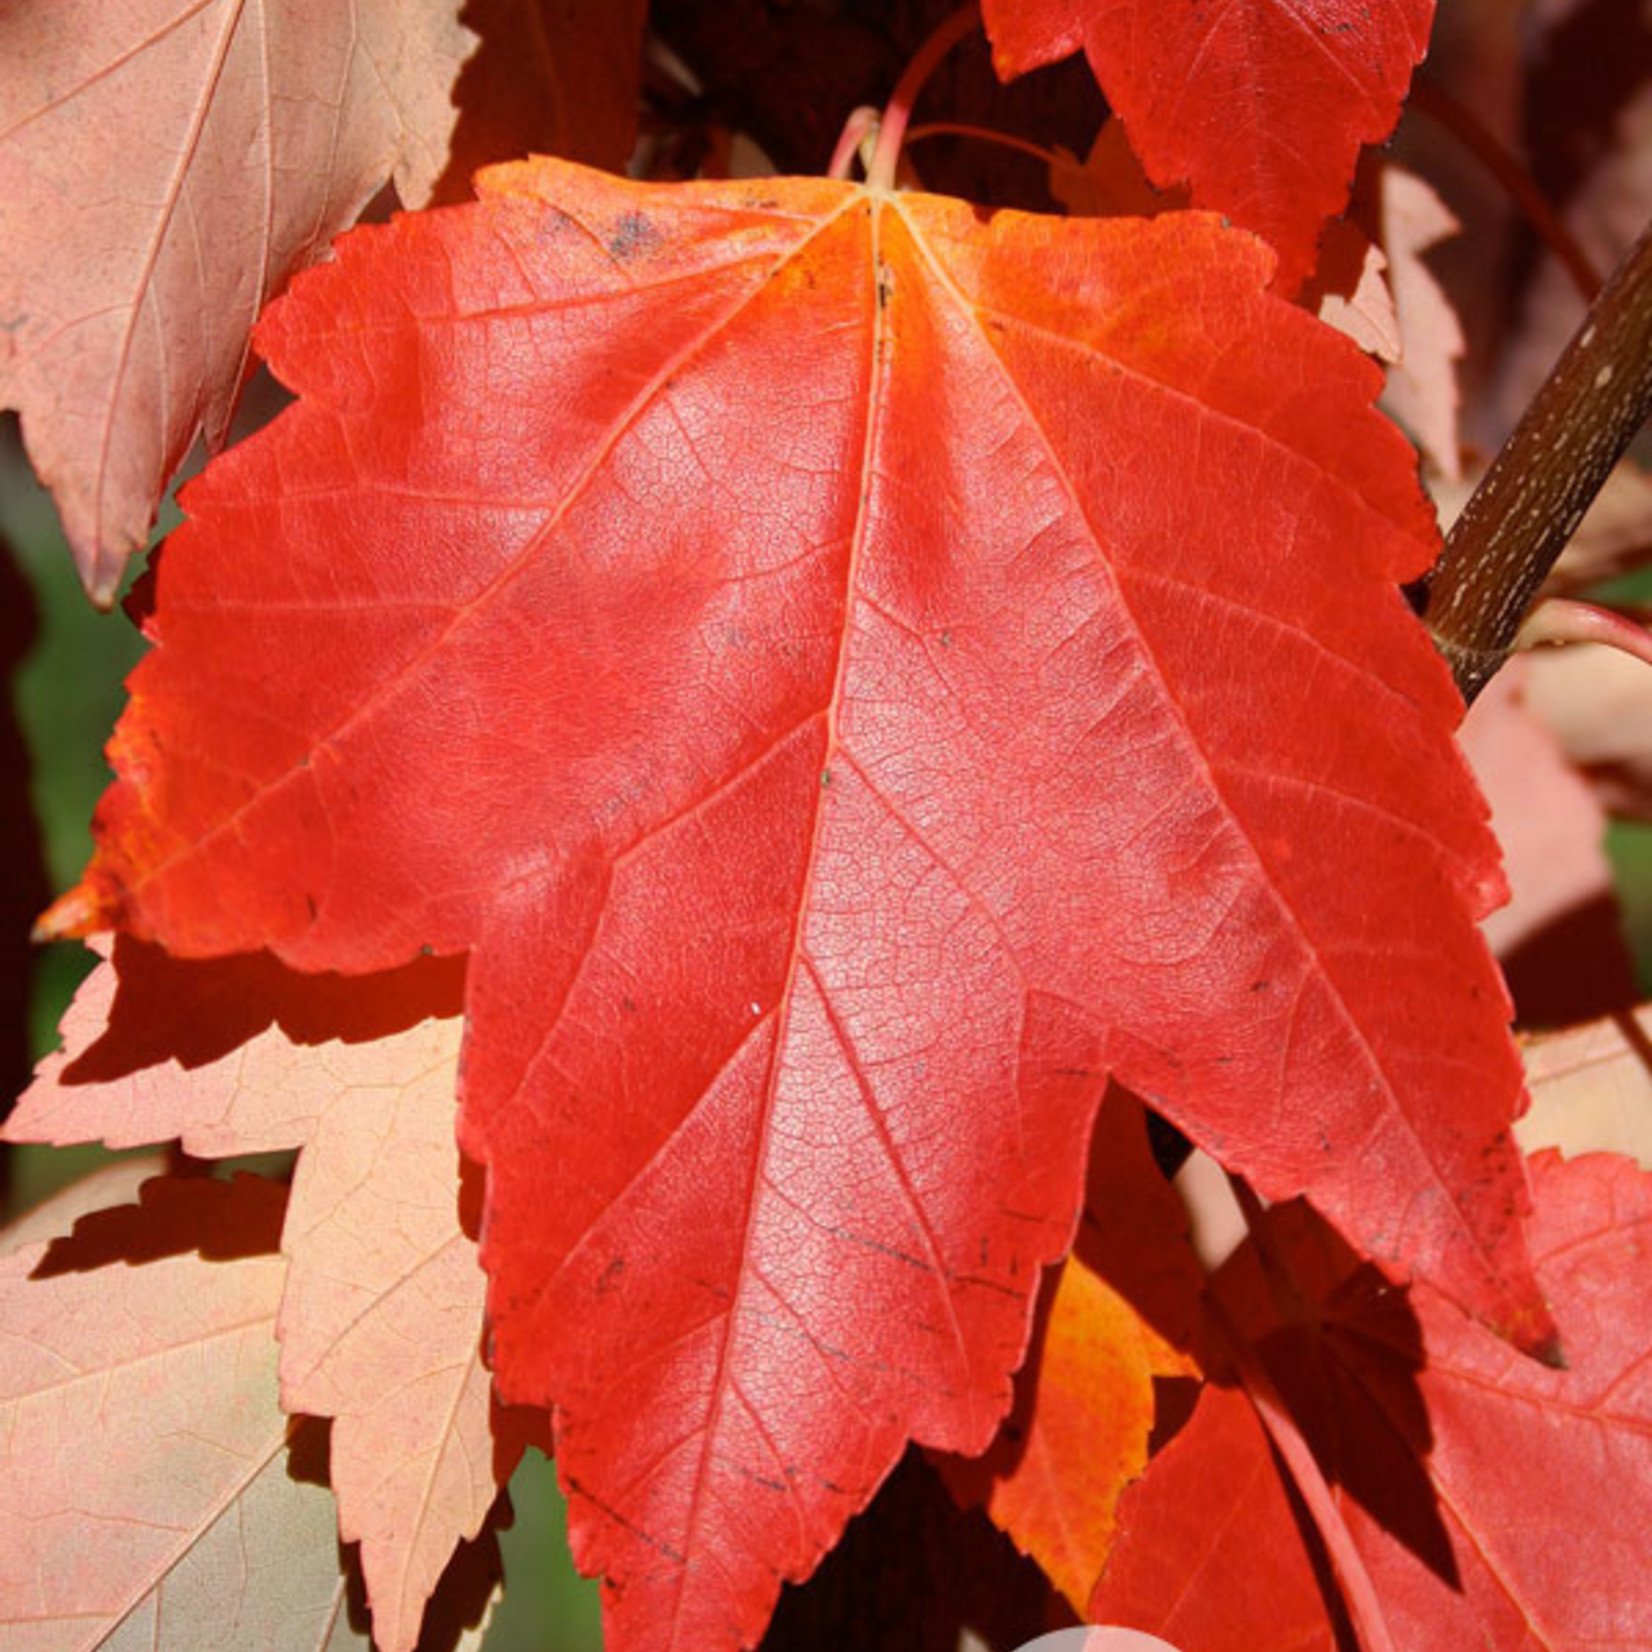 Acer rubrum 'Franksred' / Red Sunset Maple